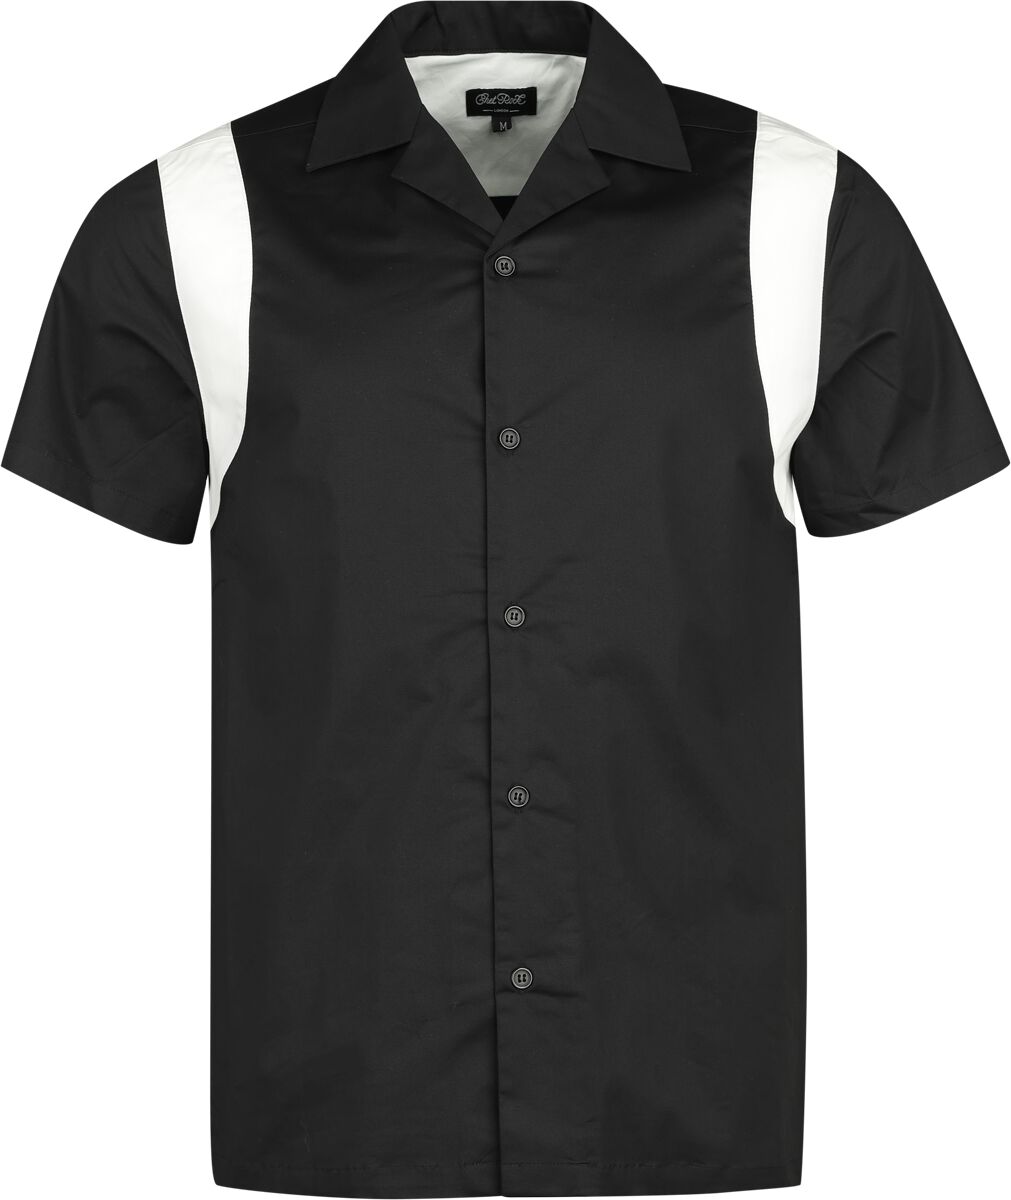 Chet Rock - Rockabilly Kurzarmhemd - Marty Bowling Shirt - S bis XL - für Männer - Größe M - schwarz/weiß